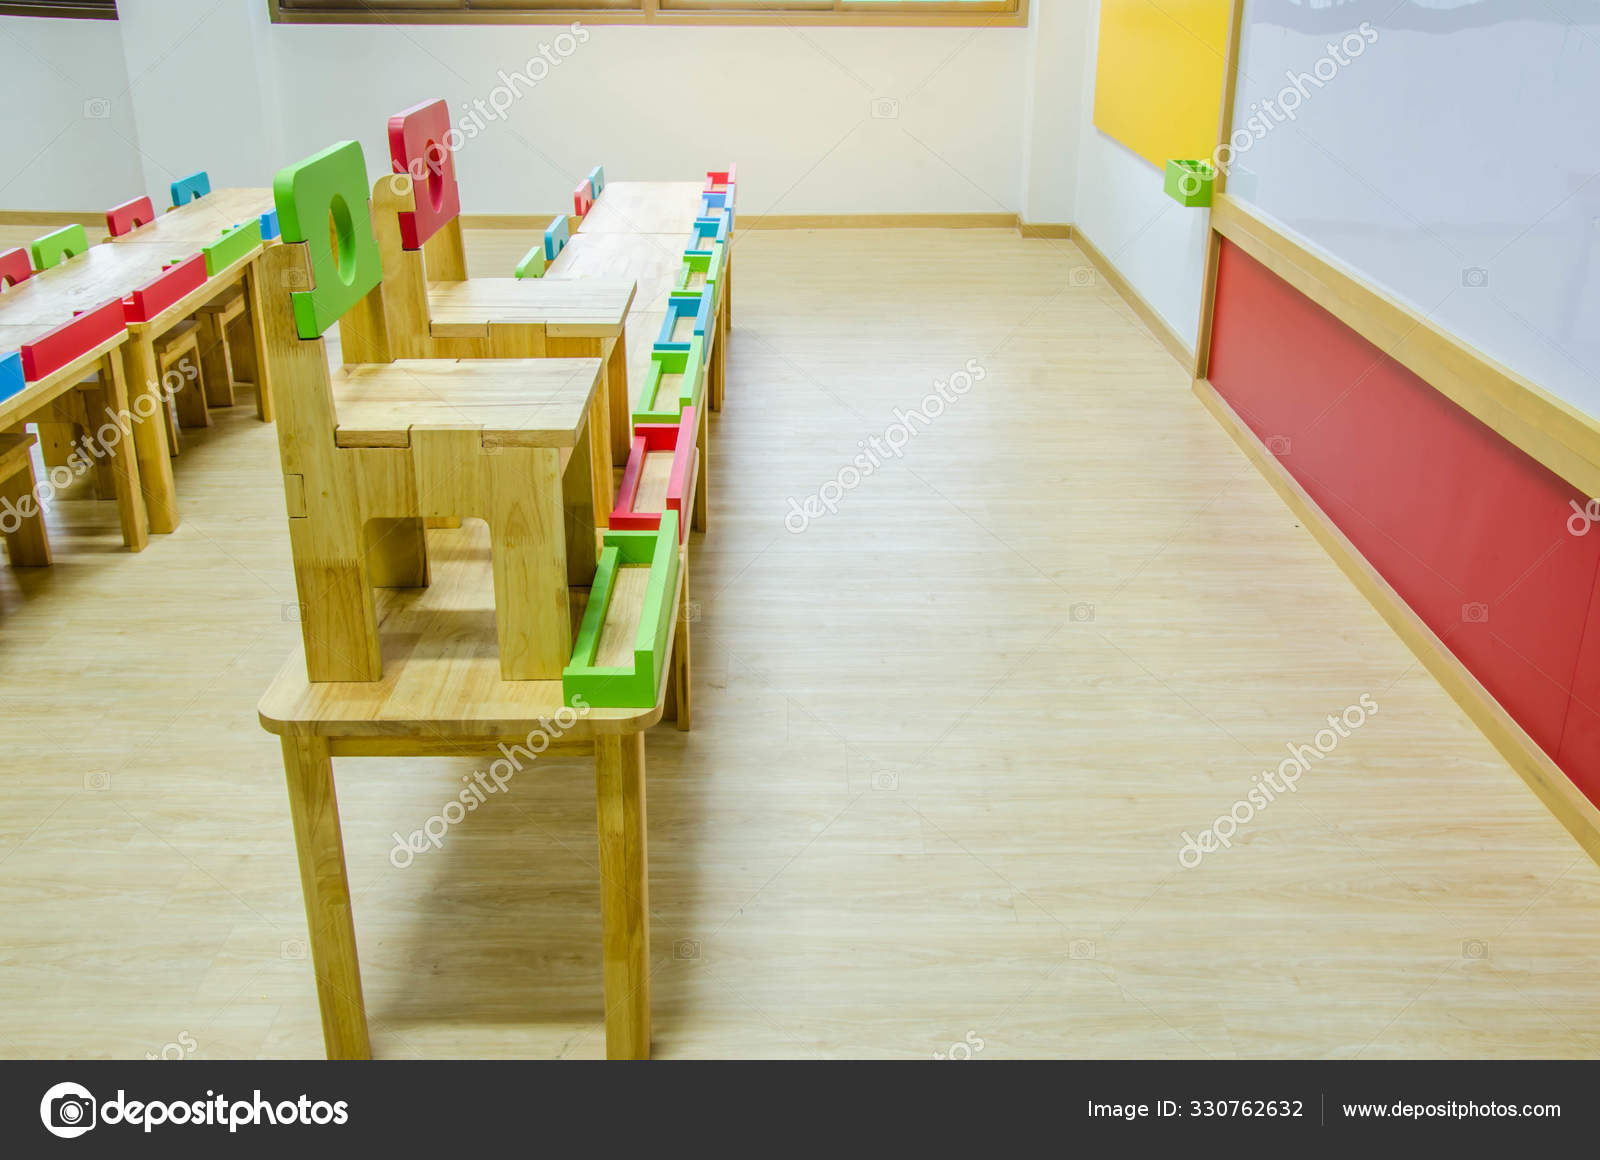 kindergarten desks